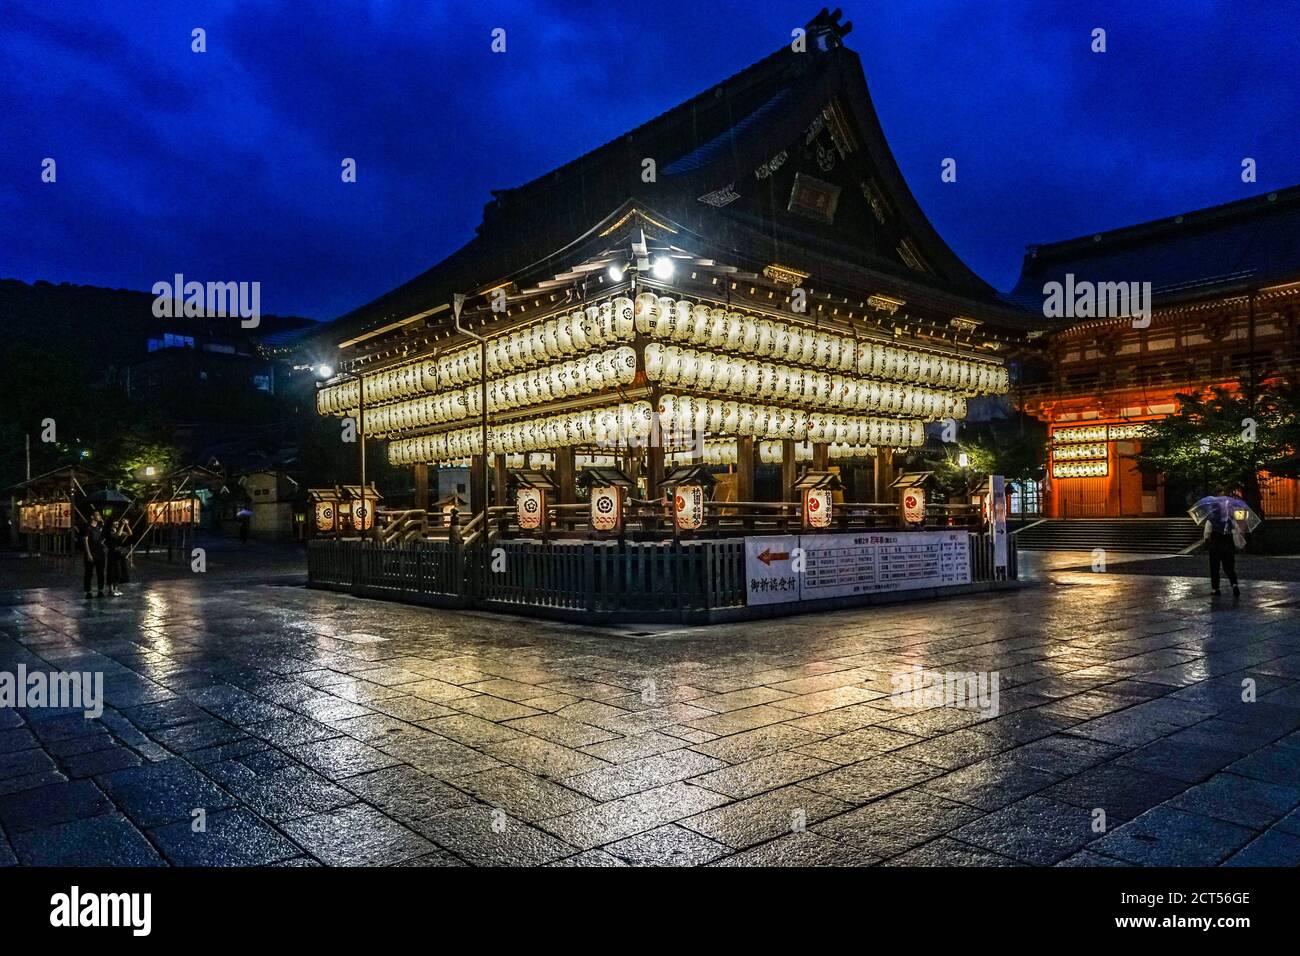 Yasaka Jinja Shrine, Maidono (salle de danse) lors d'une nuit de pluie à Gion, Kyoto, Japon Banque D'Images